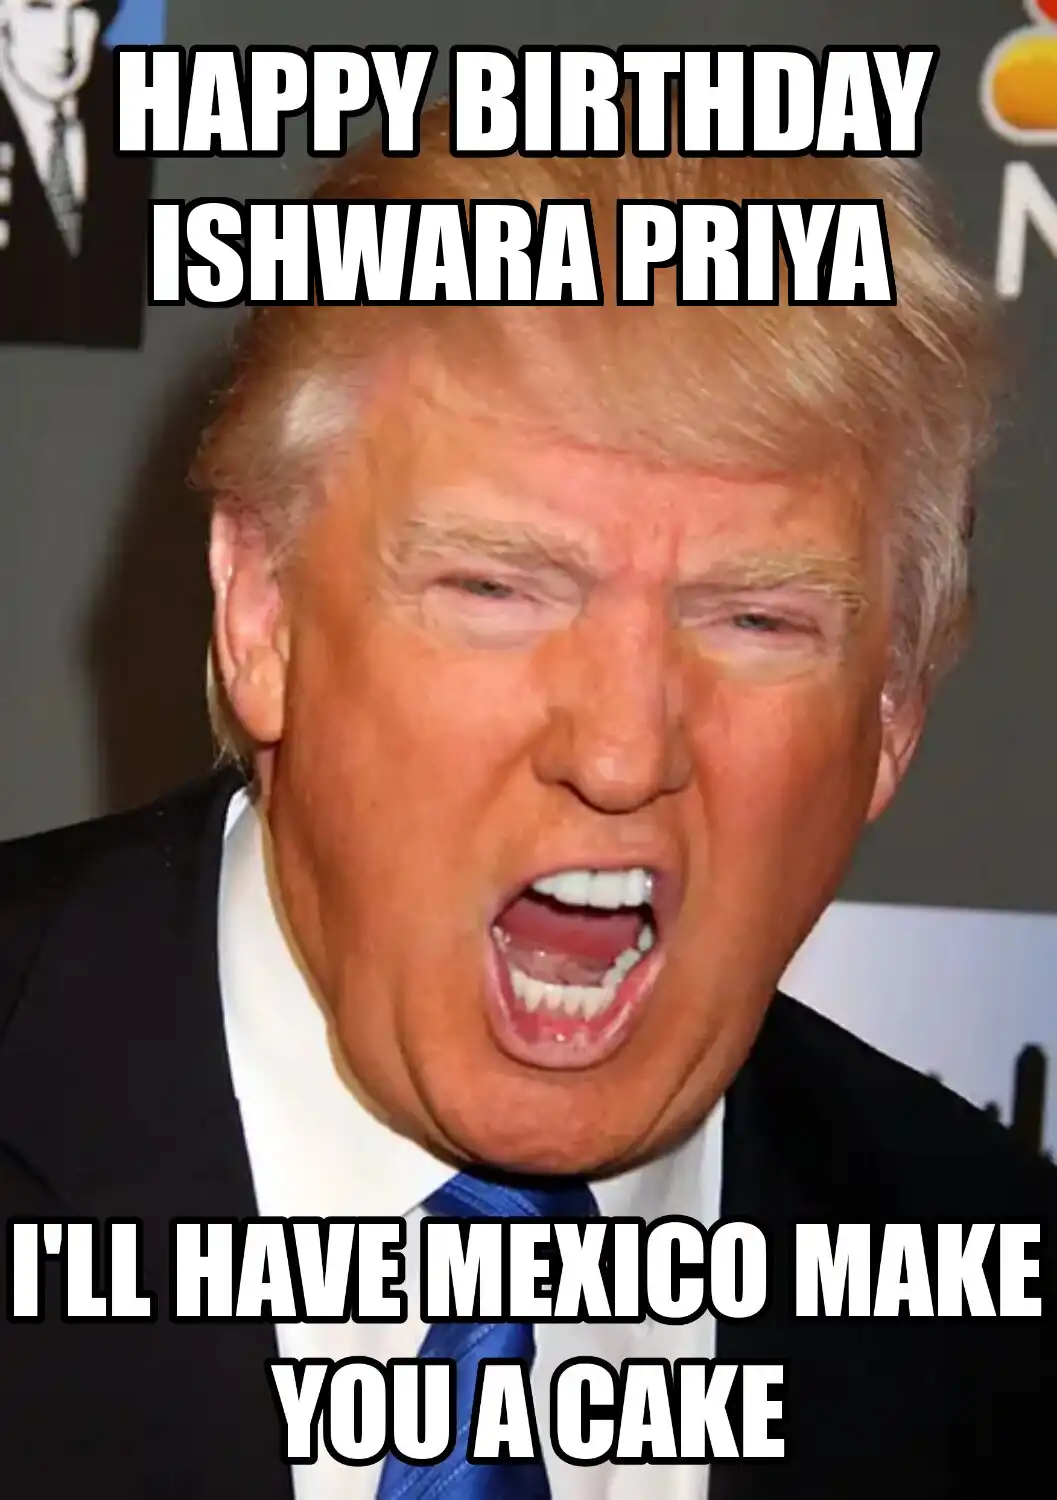 Happy Birthday Ishwara Priya Mexico Make You A Cake Meme